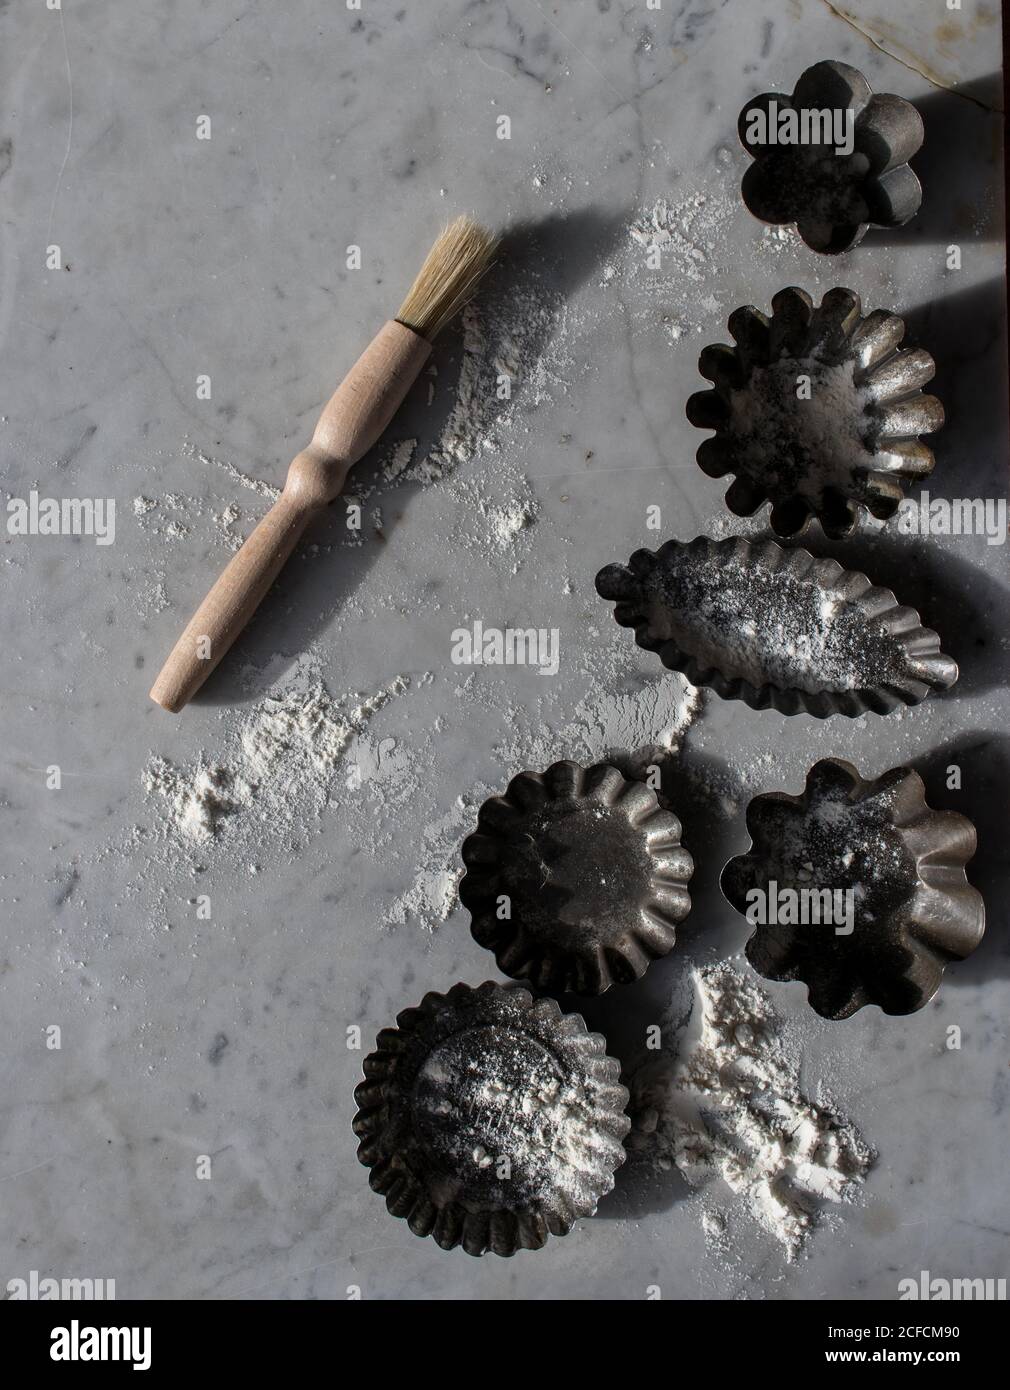 Vue de dessus de divers moules à pâtisserie en métal et petite cuisine badigeonner sur une table en marbre parsemée de farine blanche Banque D'Images